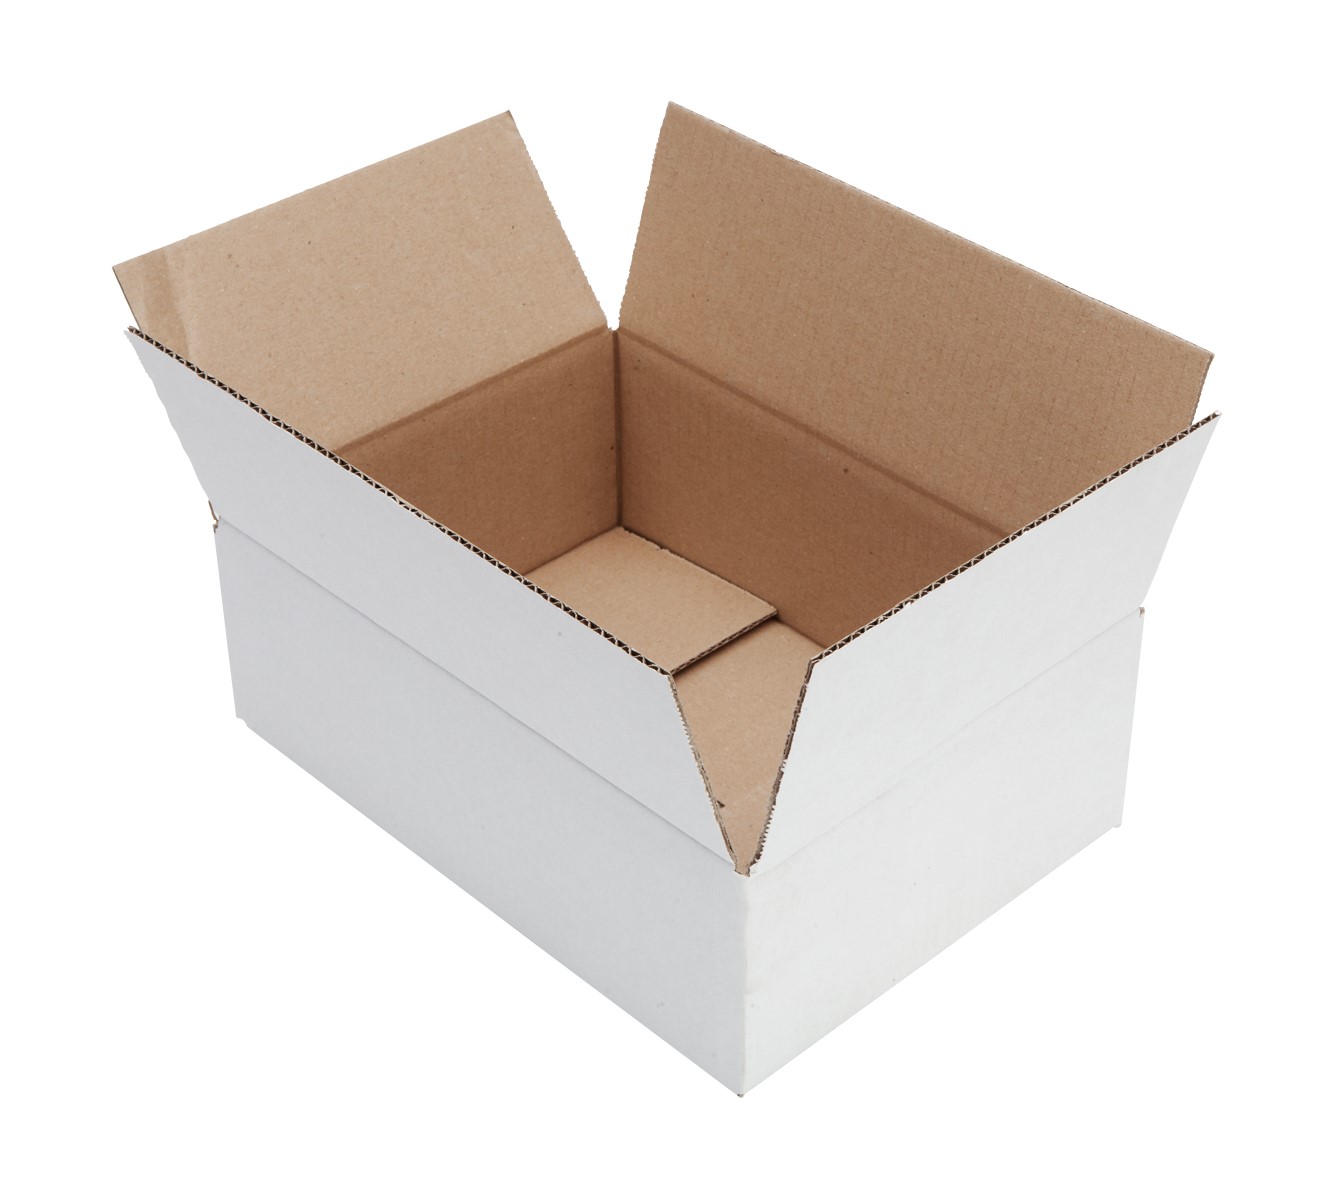 Caius dynastie kompas Witte doos kopen? Bestel uw verpakkingsmateriaal geheel op maat!